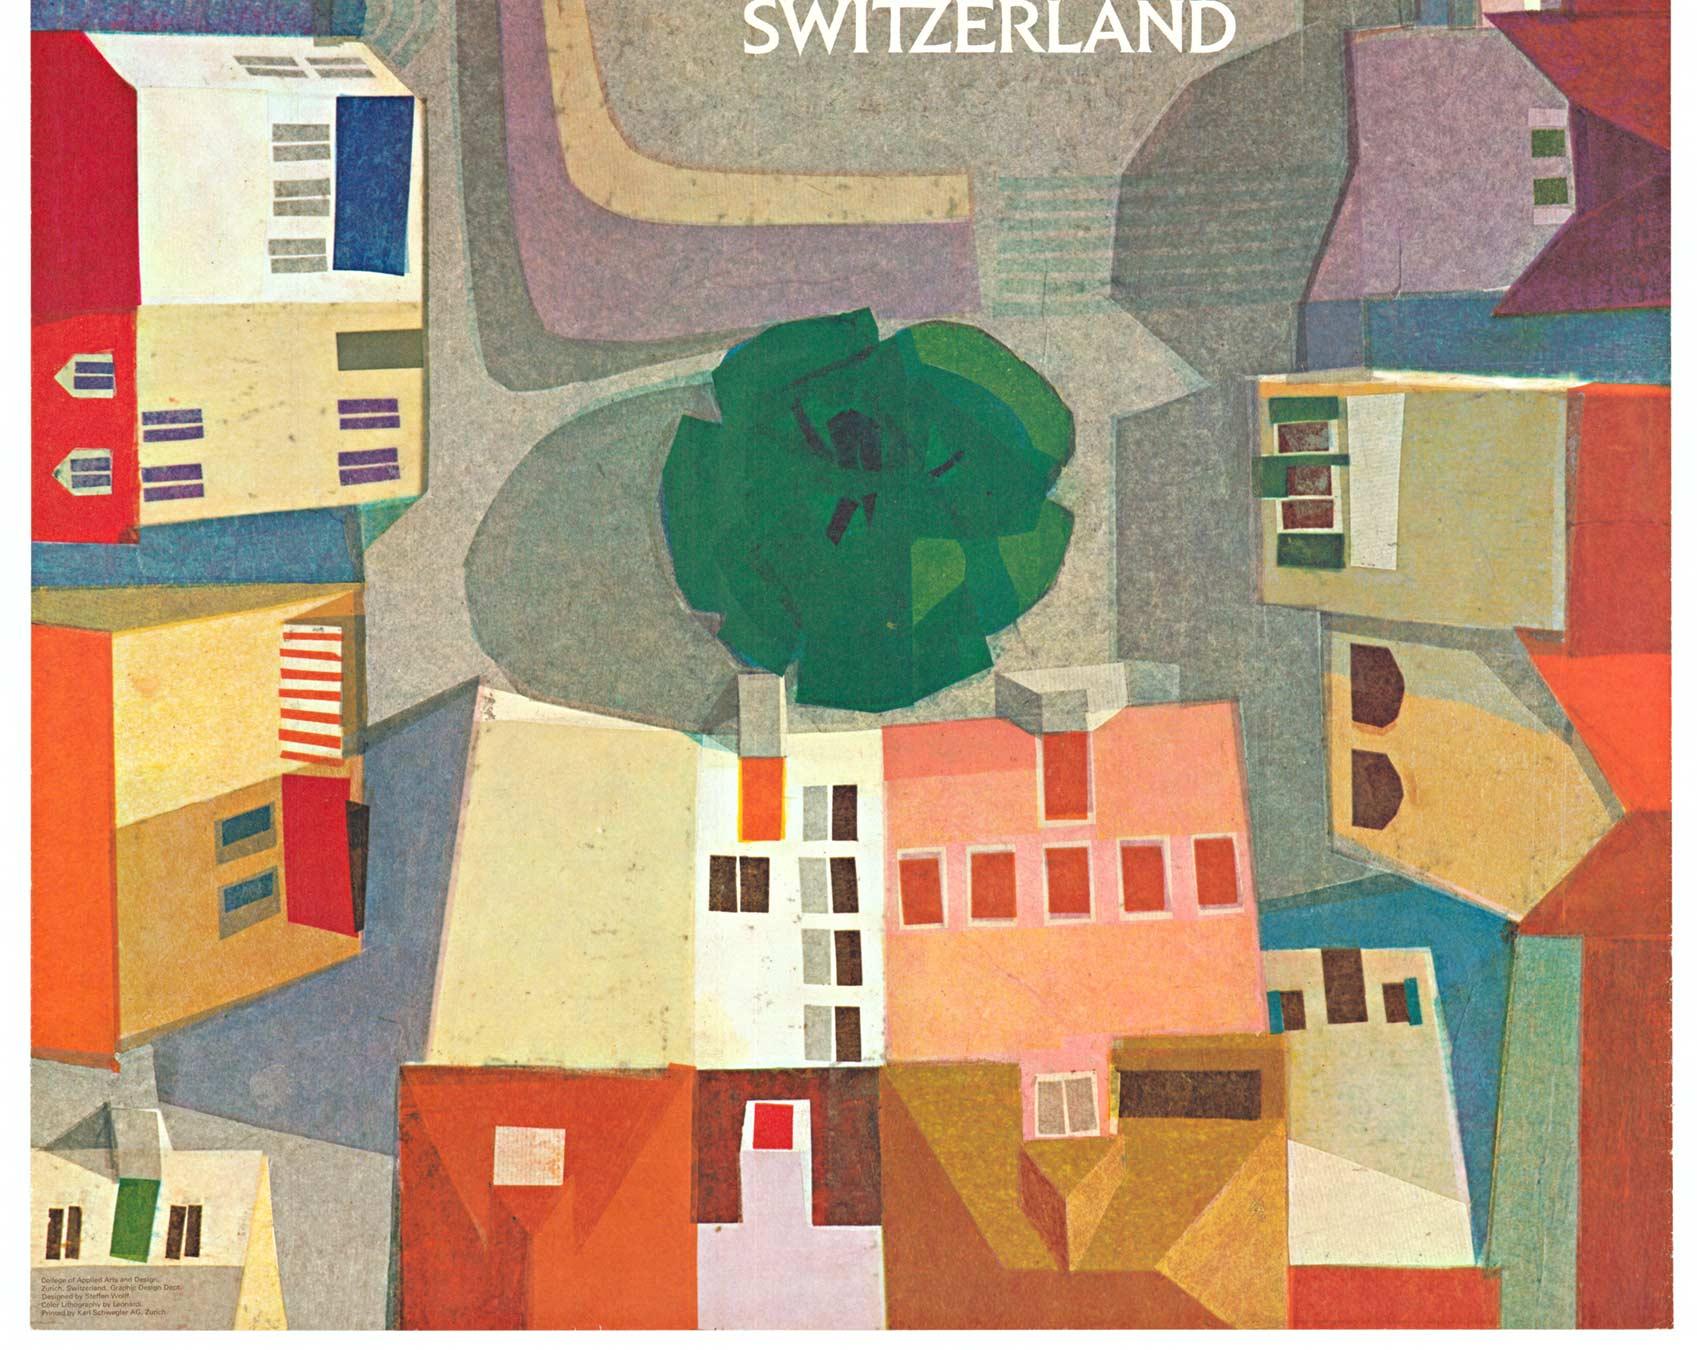 Original Zurich, Switzerland vintage travel poster - Brown Landscape Print by Steffen Wolff